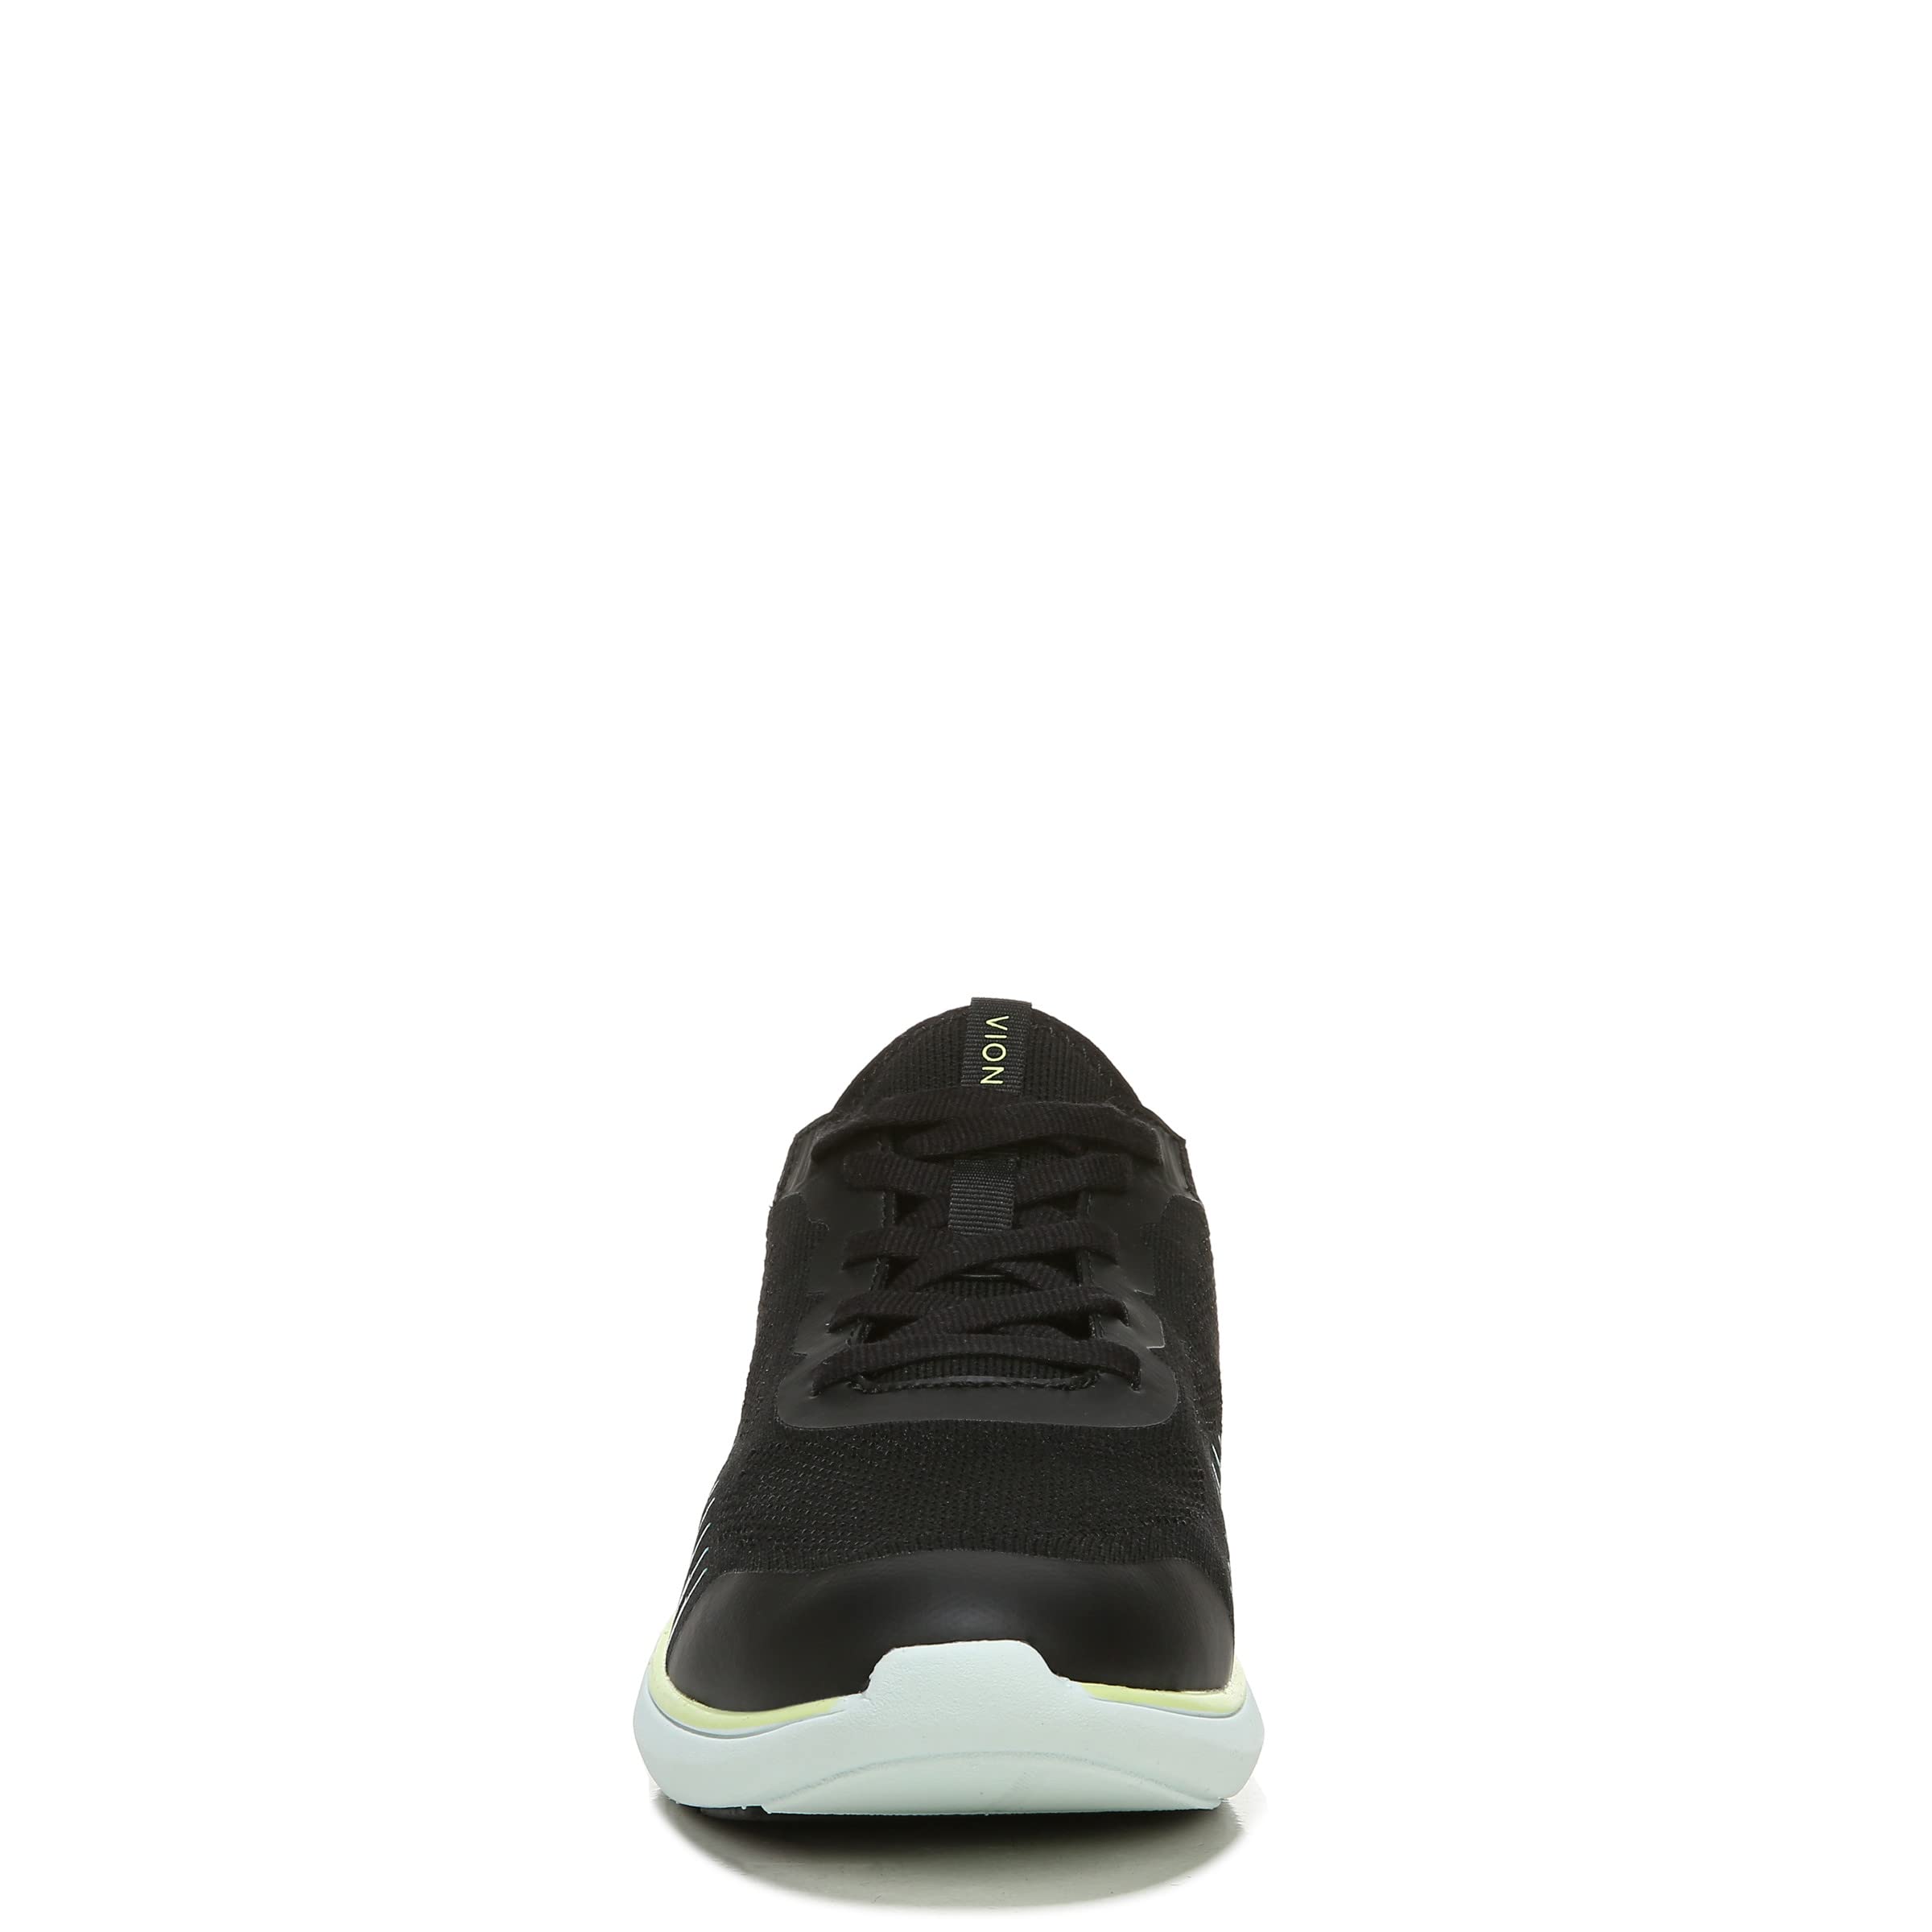 Vionic Embolden Women's Knit Slip-on Sneaker Black/Pale Lime - 8.5 Medium